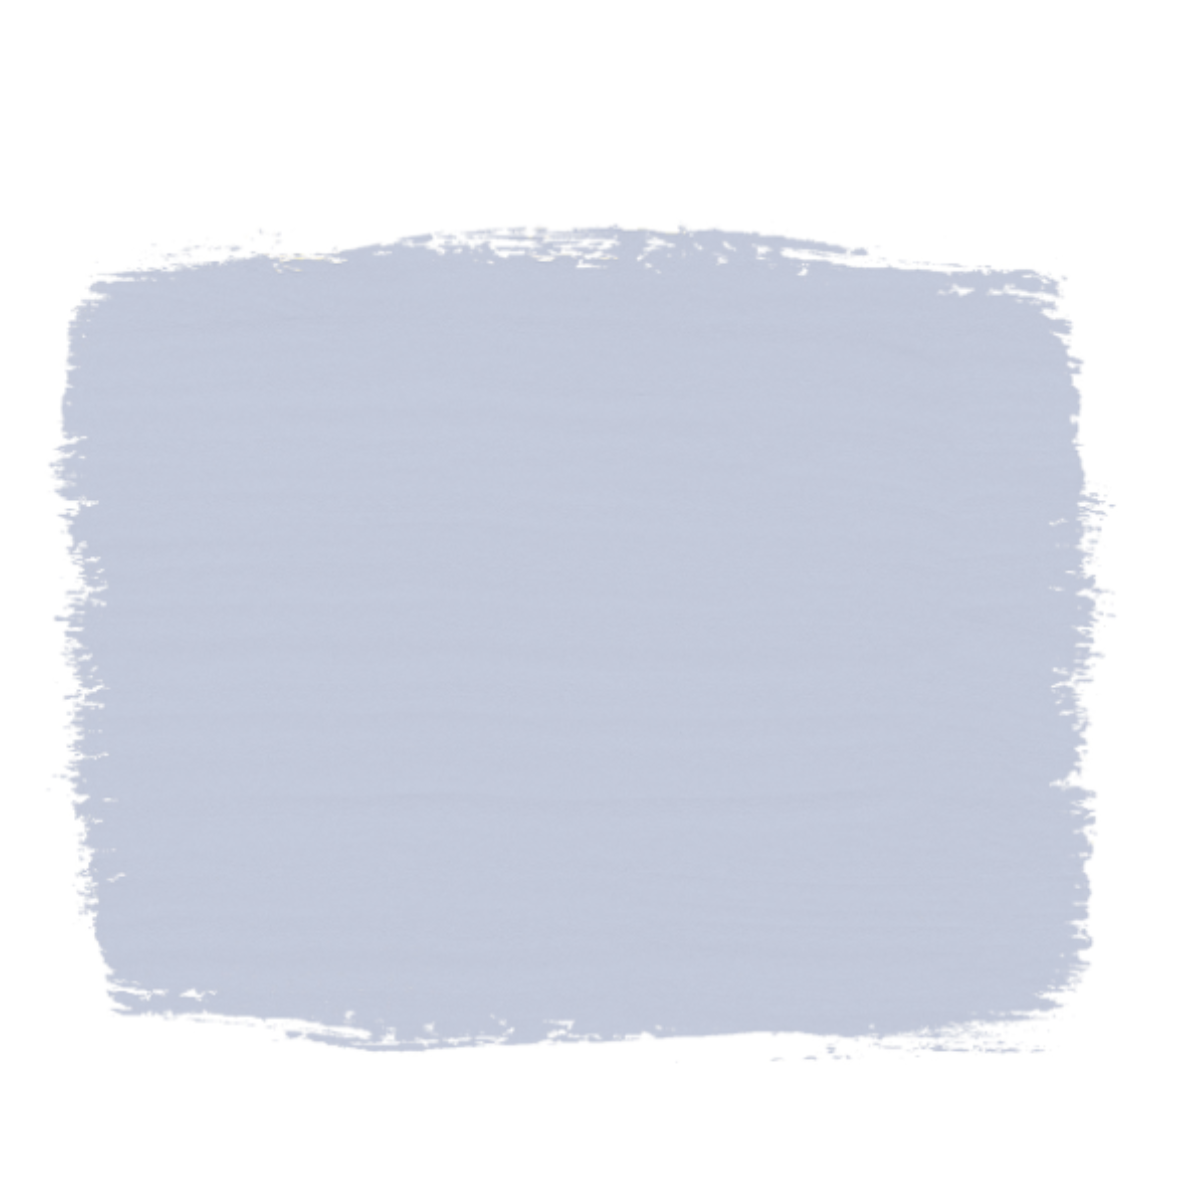 Svenska Blue Chalk Paint®